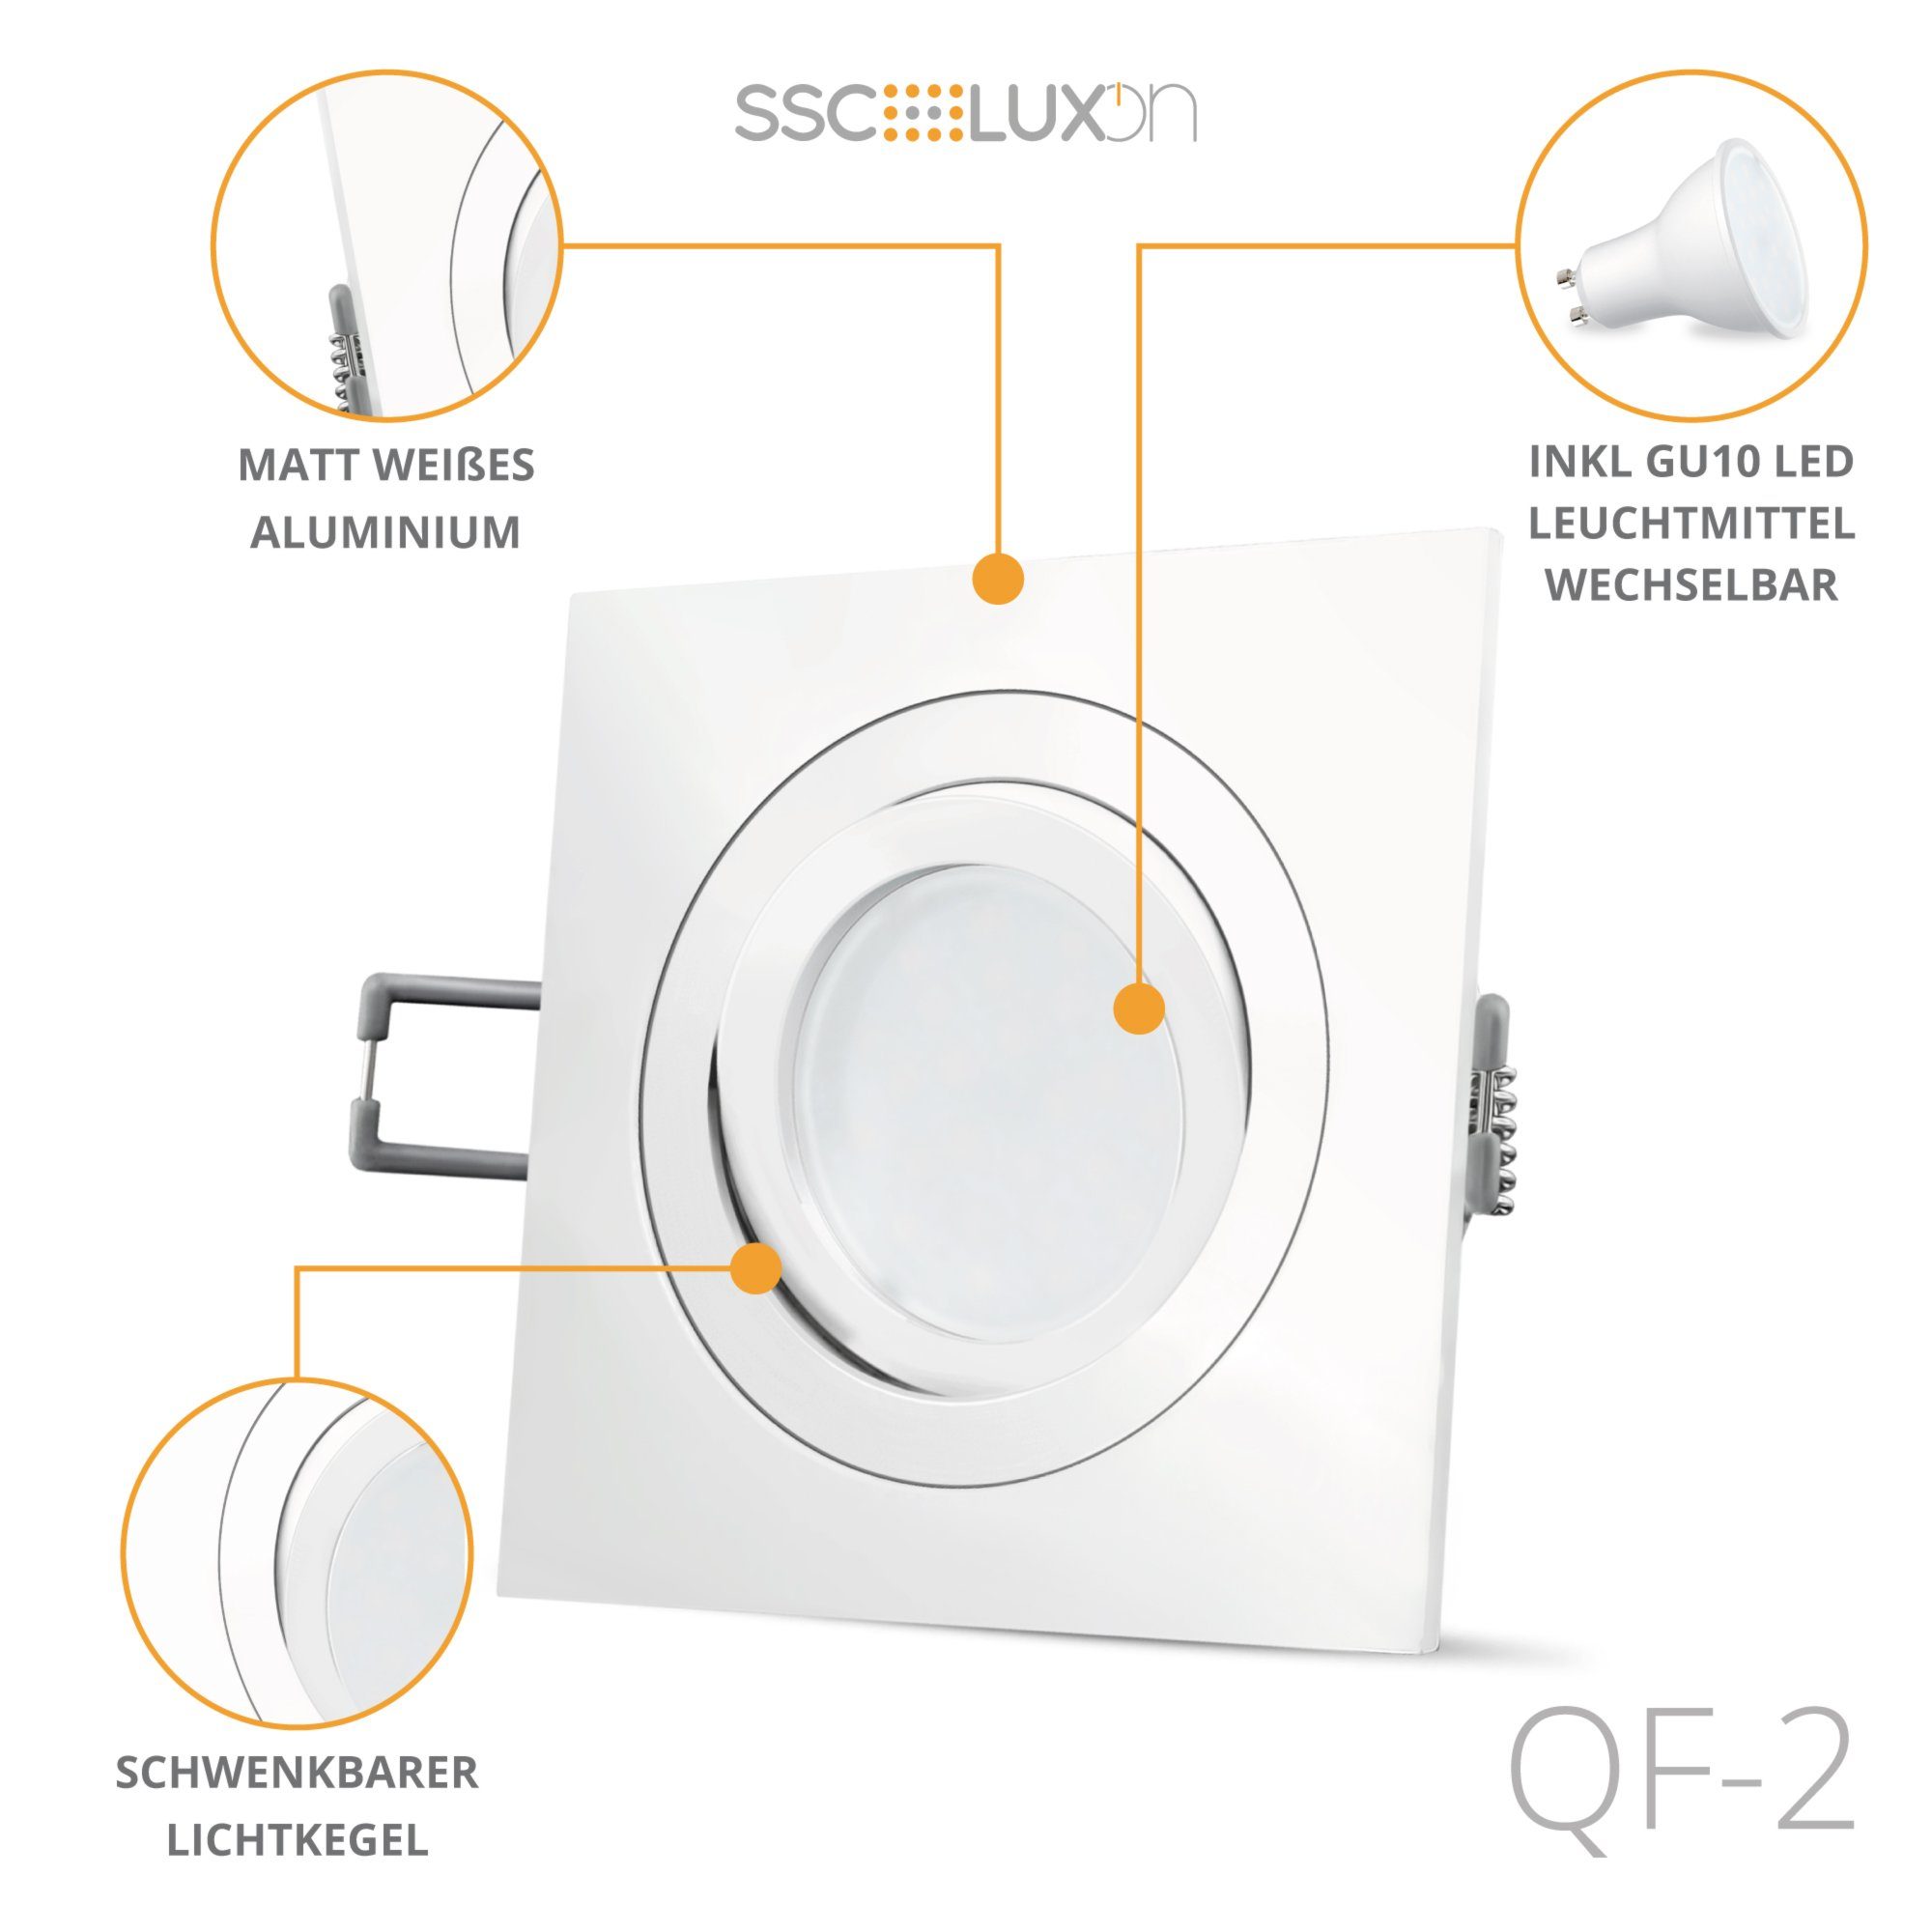 weiss SSC-LUXon LED schwenkbar LED QF-2 Einbauleuchte & Warmweiß 5W, GU10 mit Einbaustrahler Einbauspot in